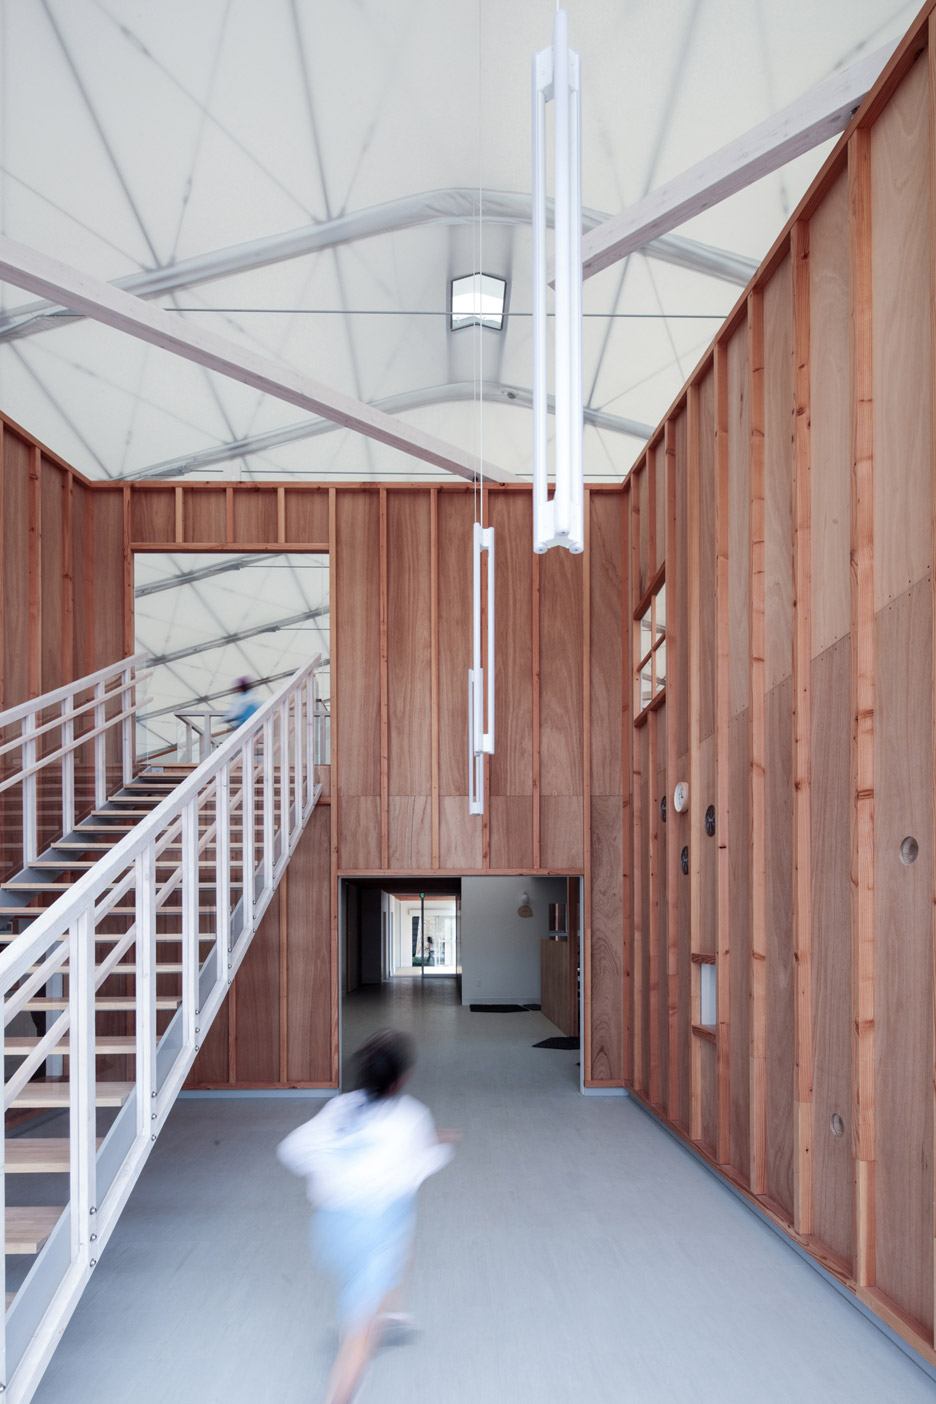 Yasutaka Yoshimura transforms warehouse into Fukumasu kindergarten